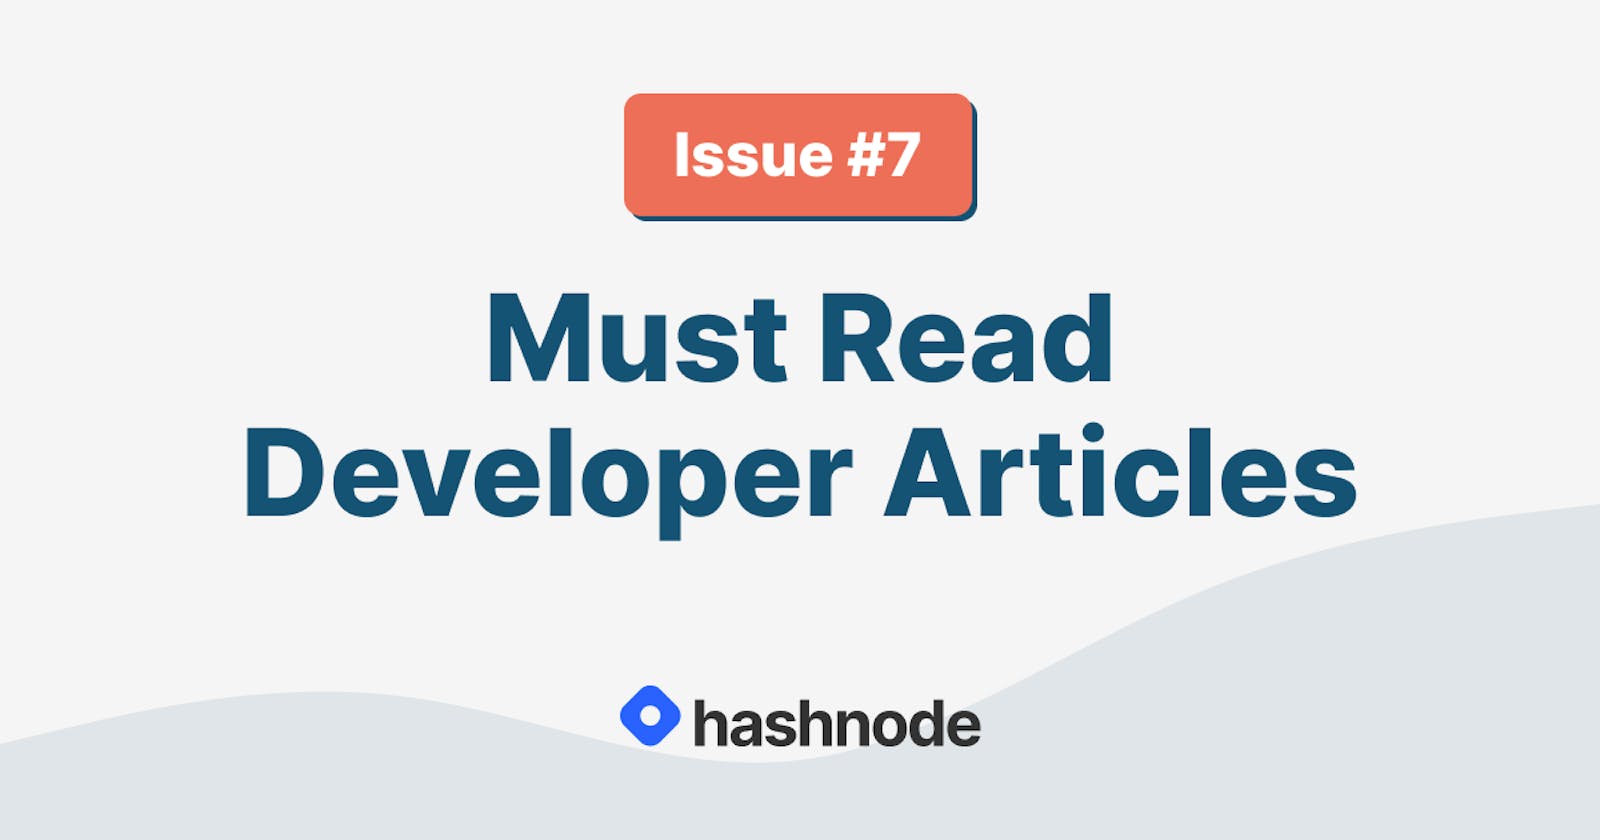 Must Read Developer Articles on Hashnode - #7